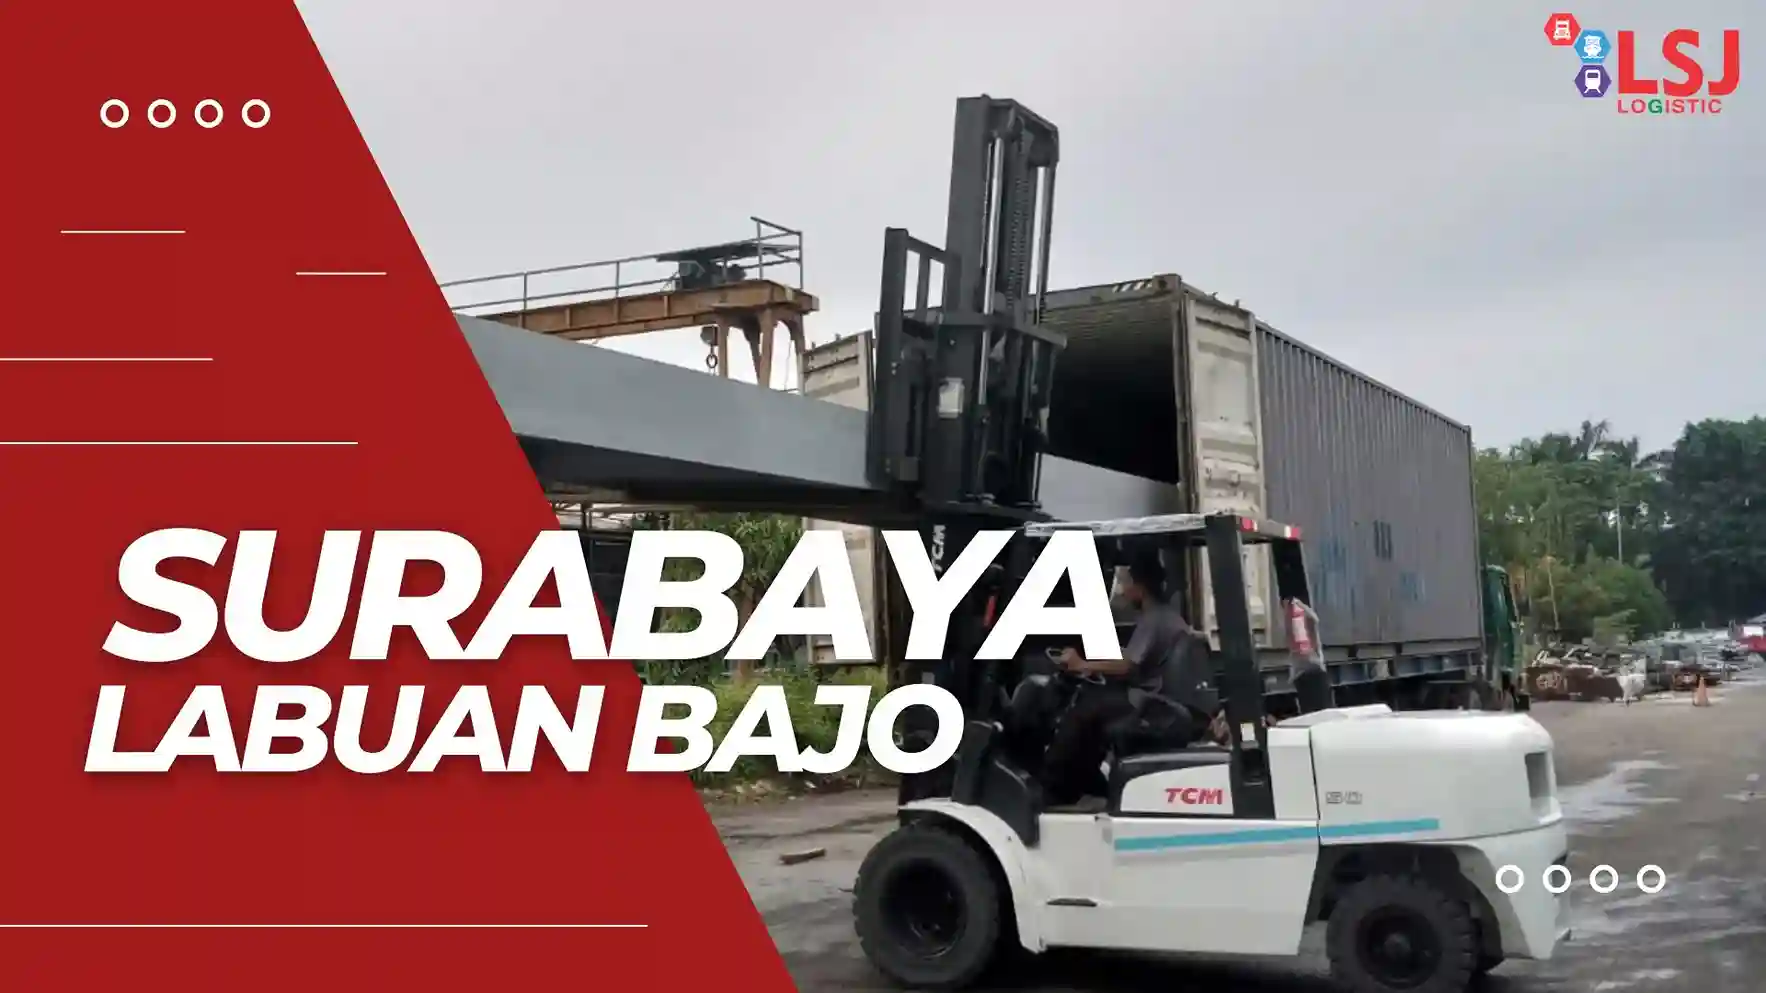 Cargo Container Surabaya Labuan Bajo